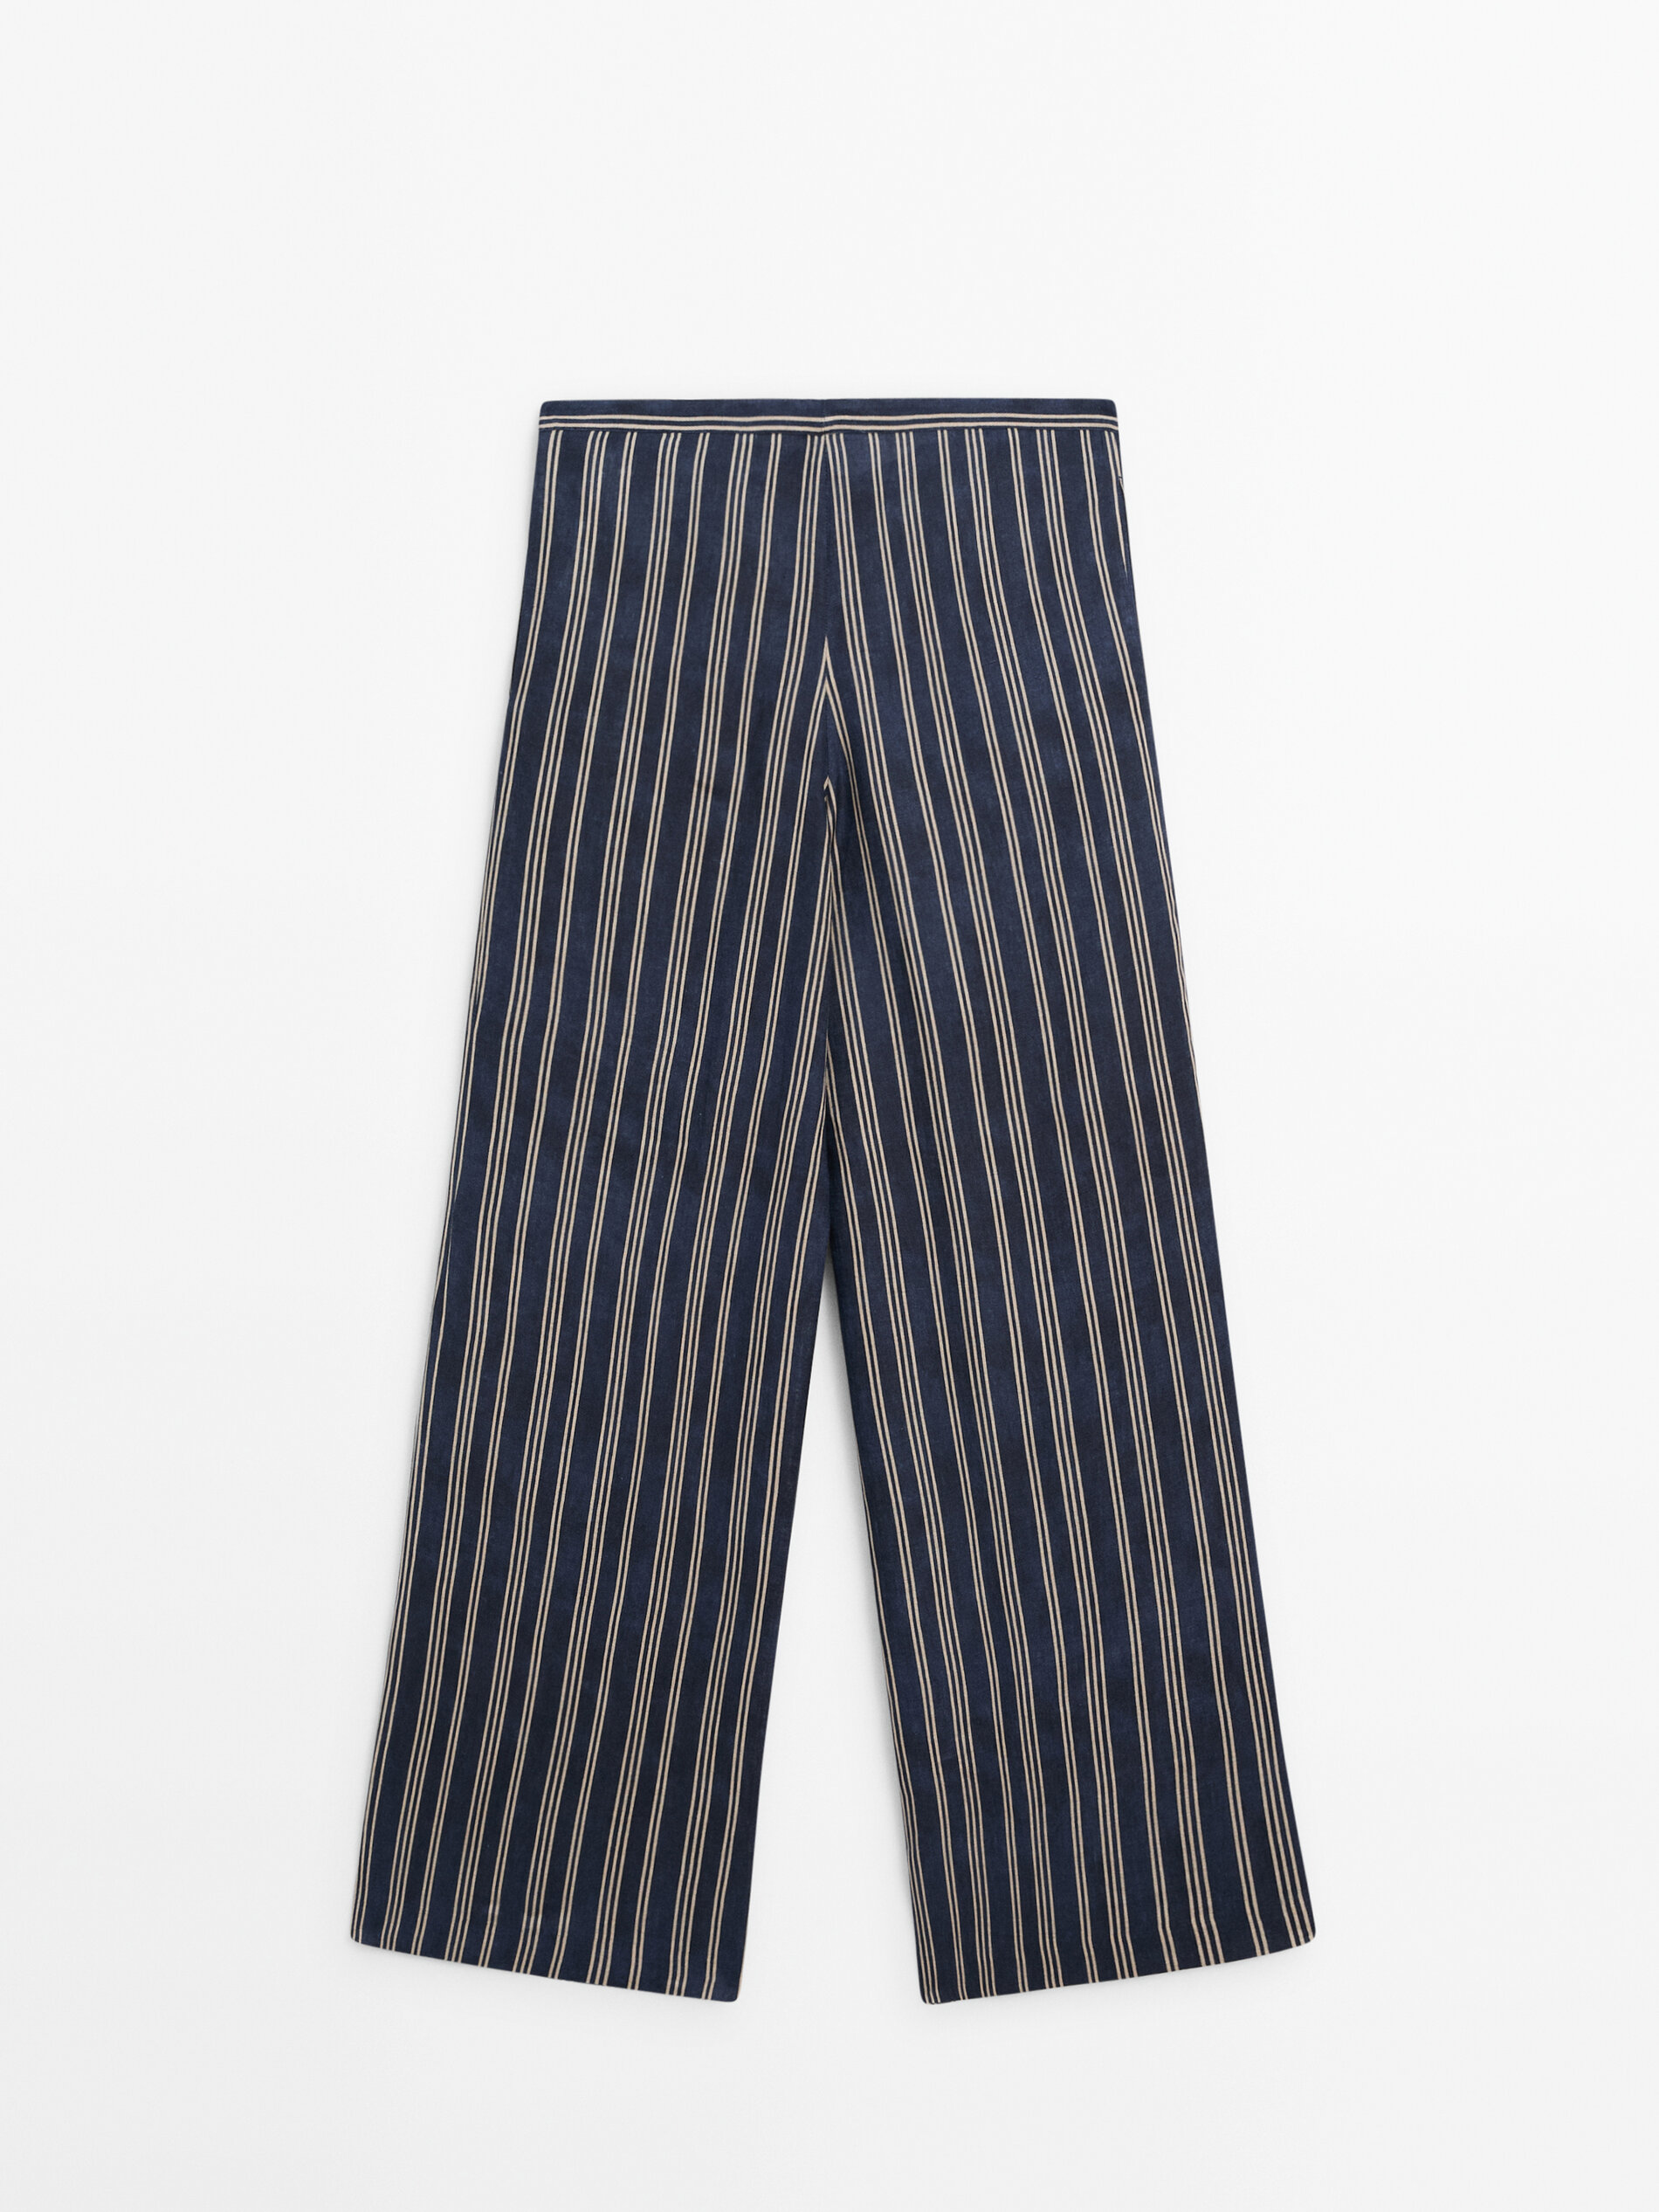 Pantalón rayas 100% lino